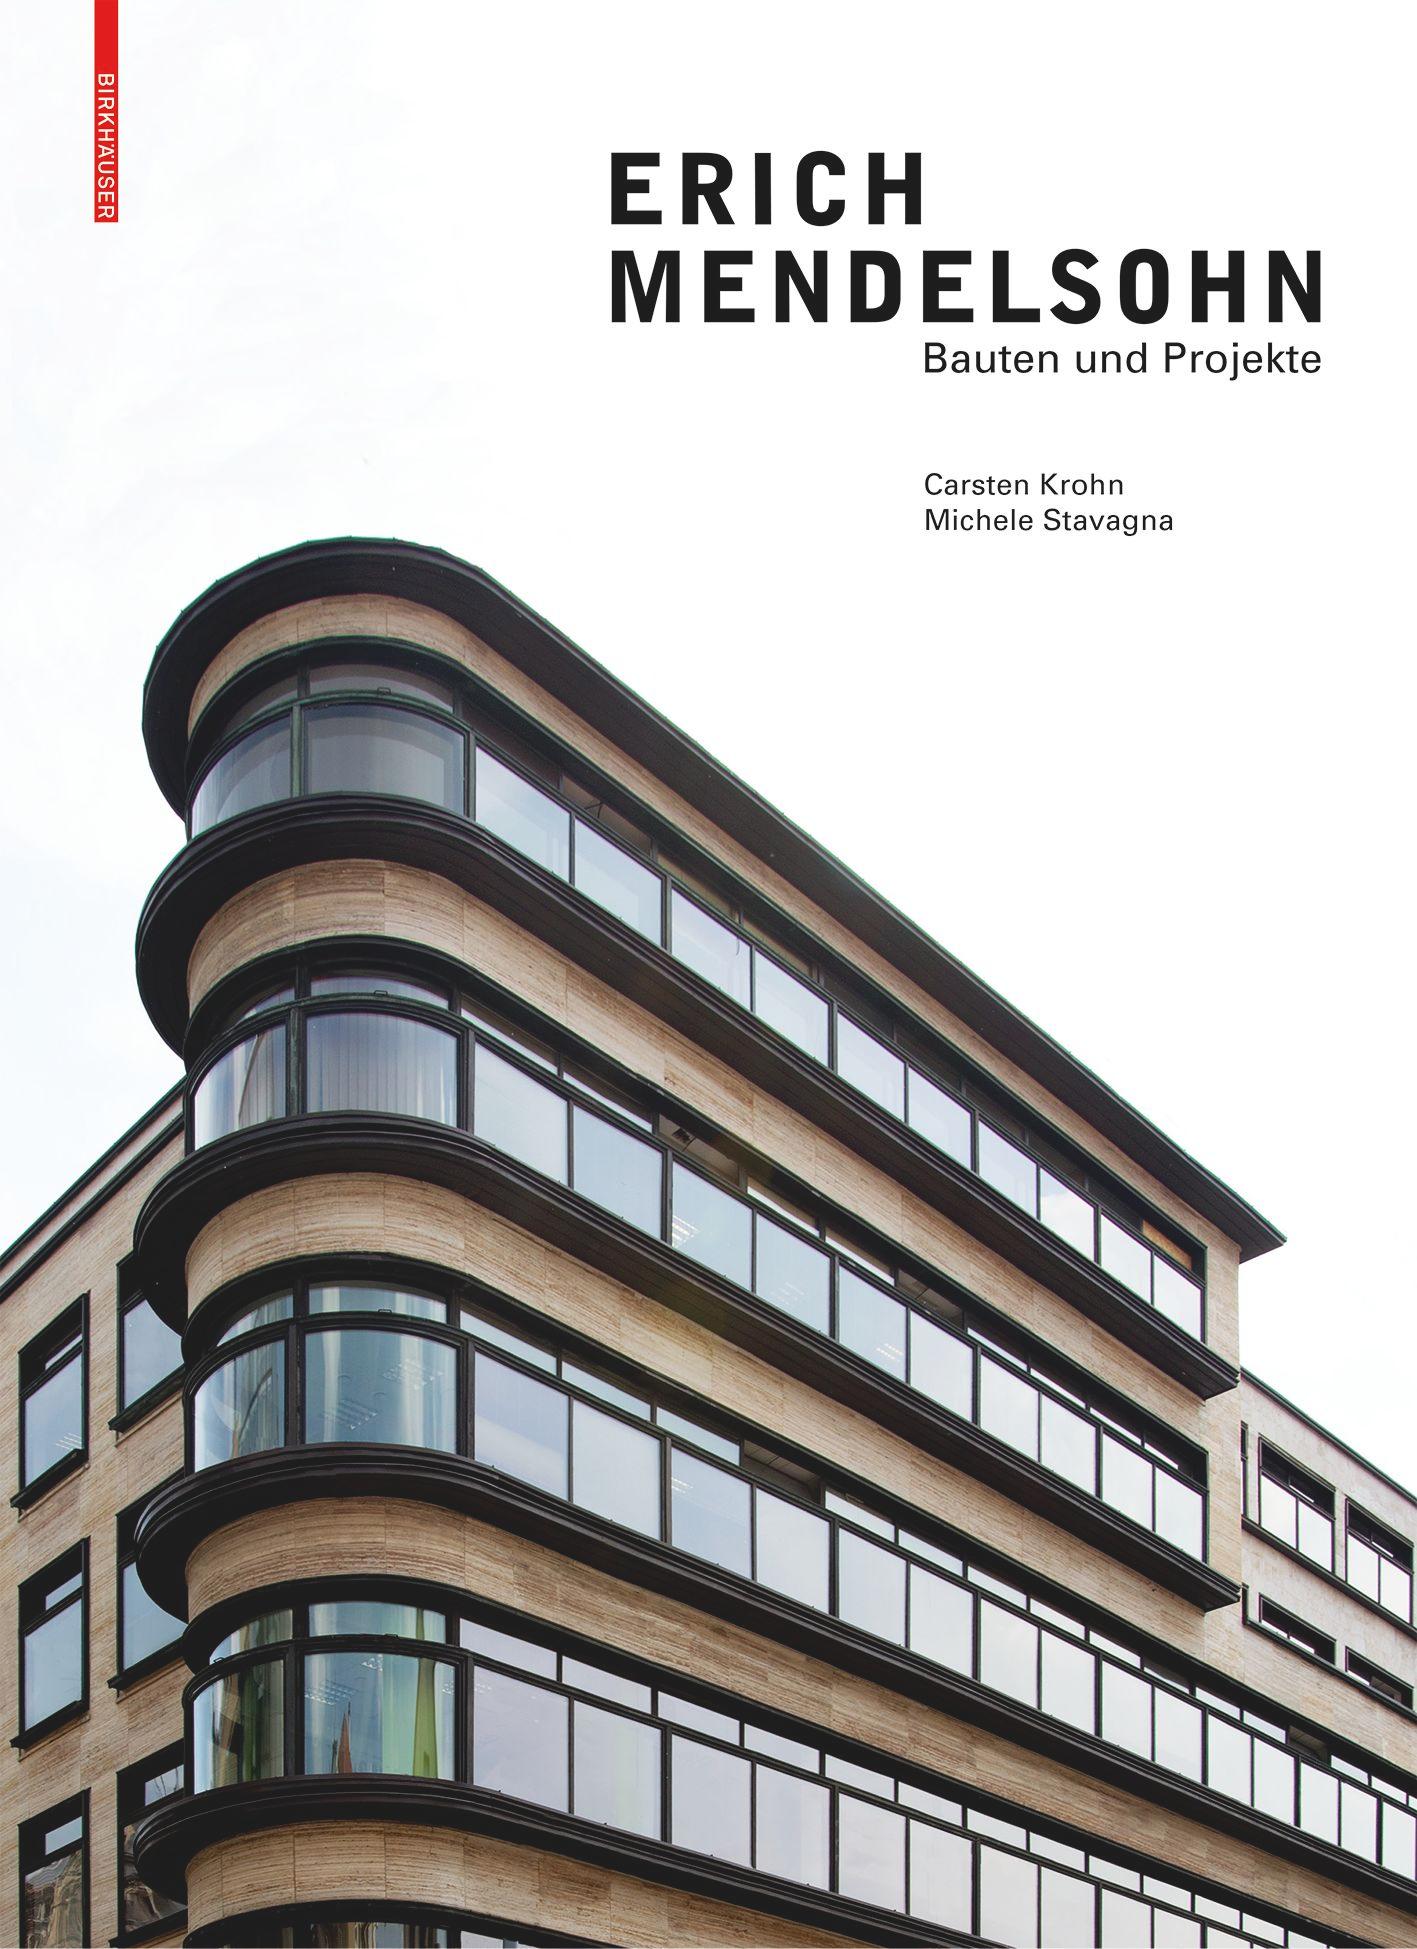 Erich Mendelsohn's cover